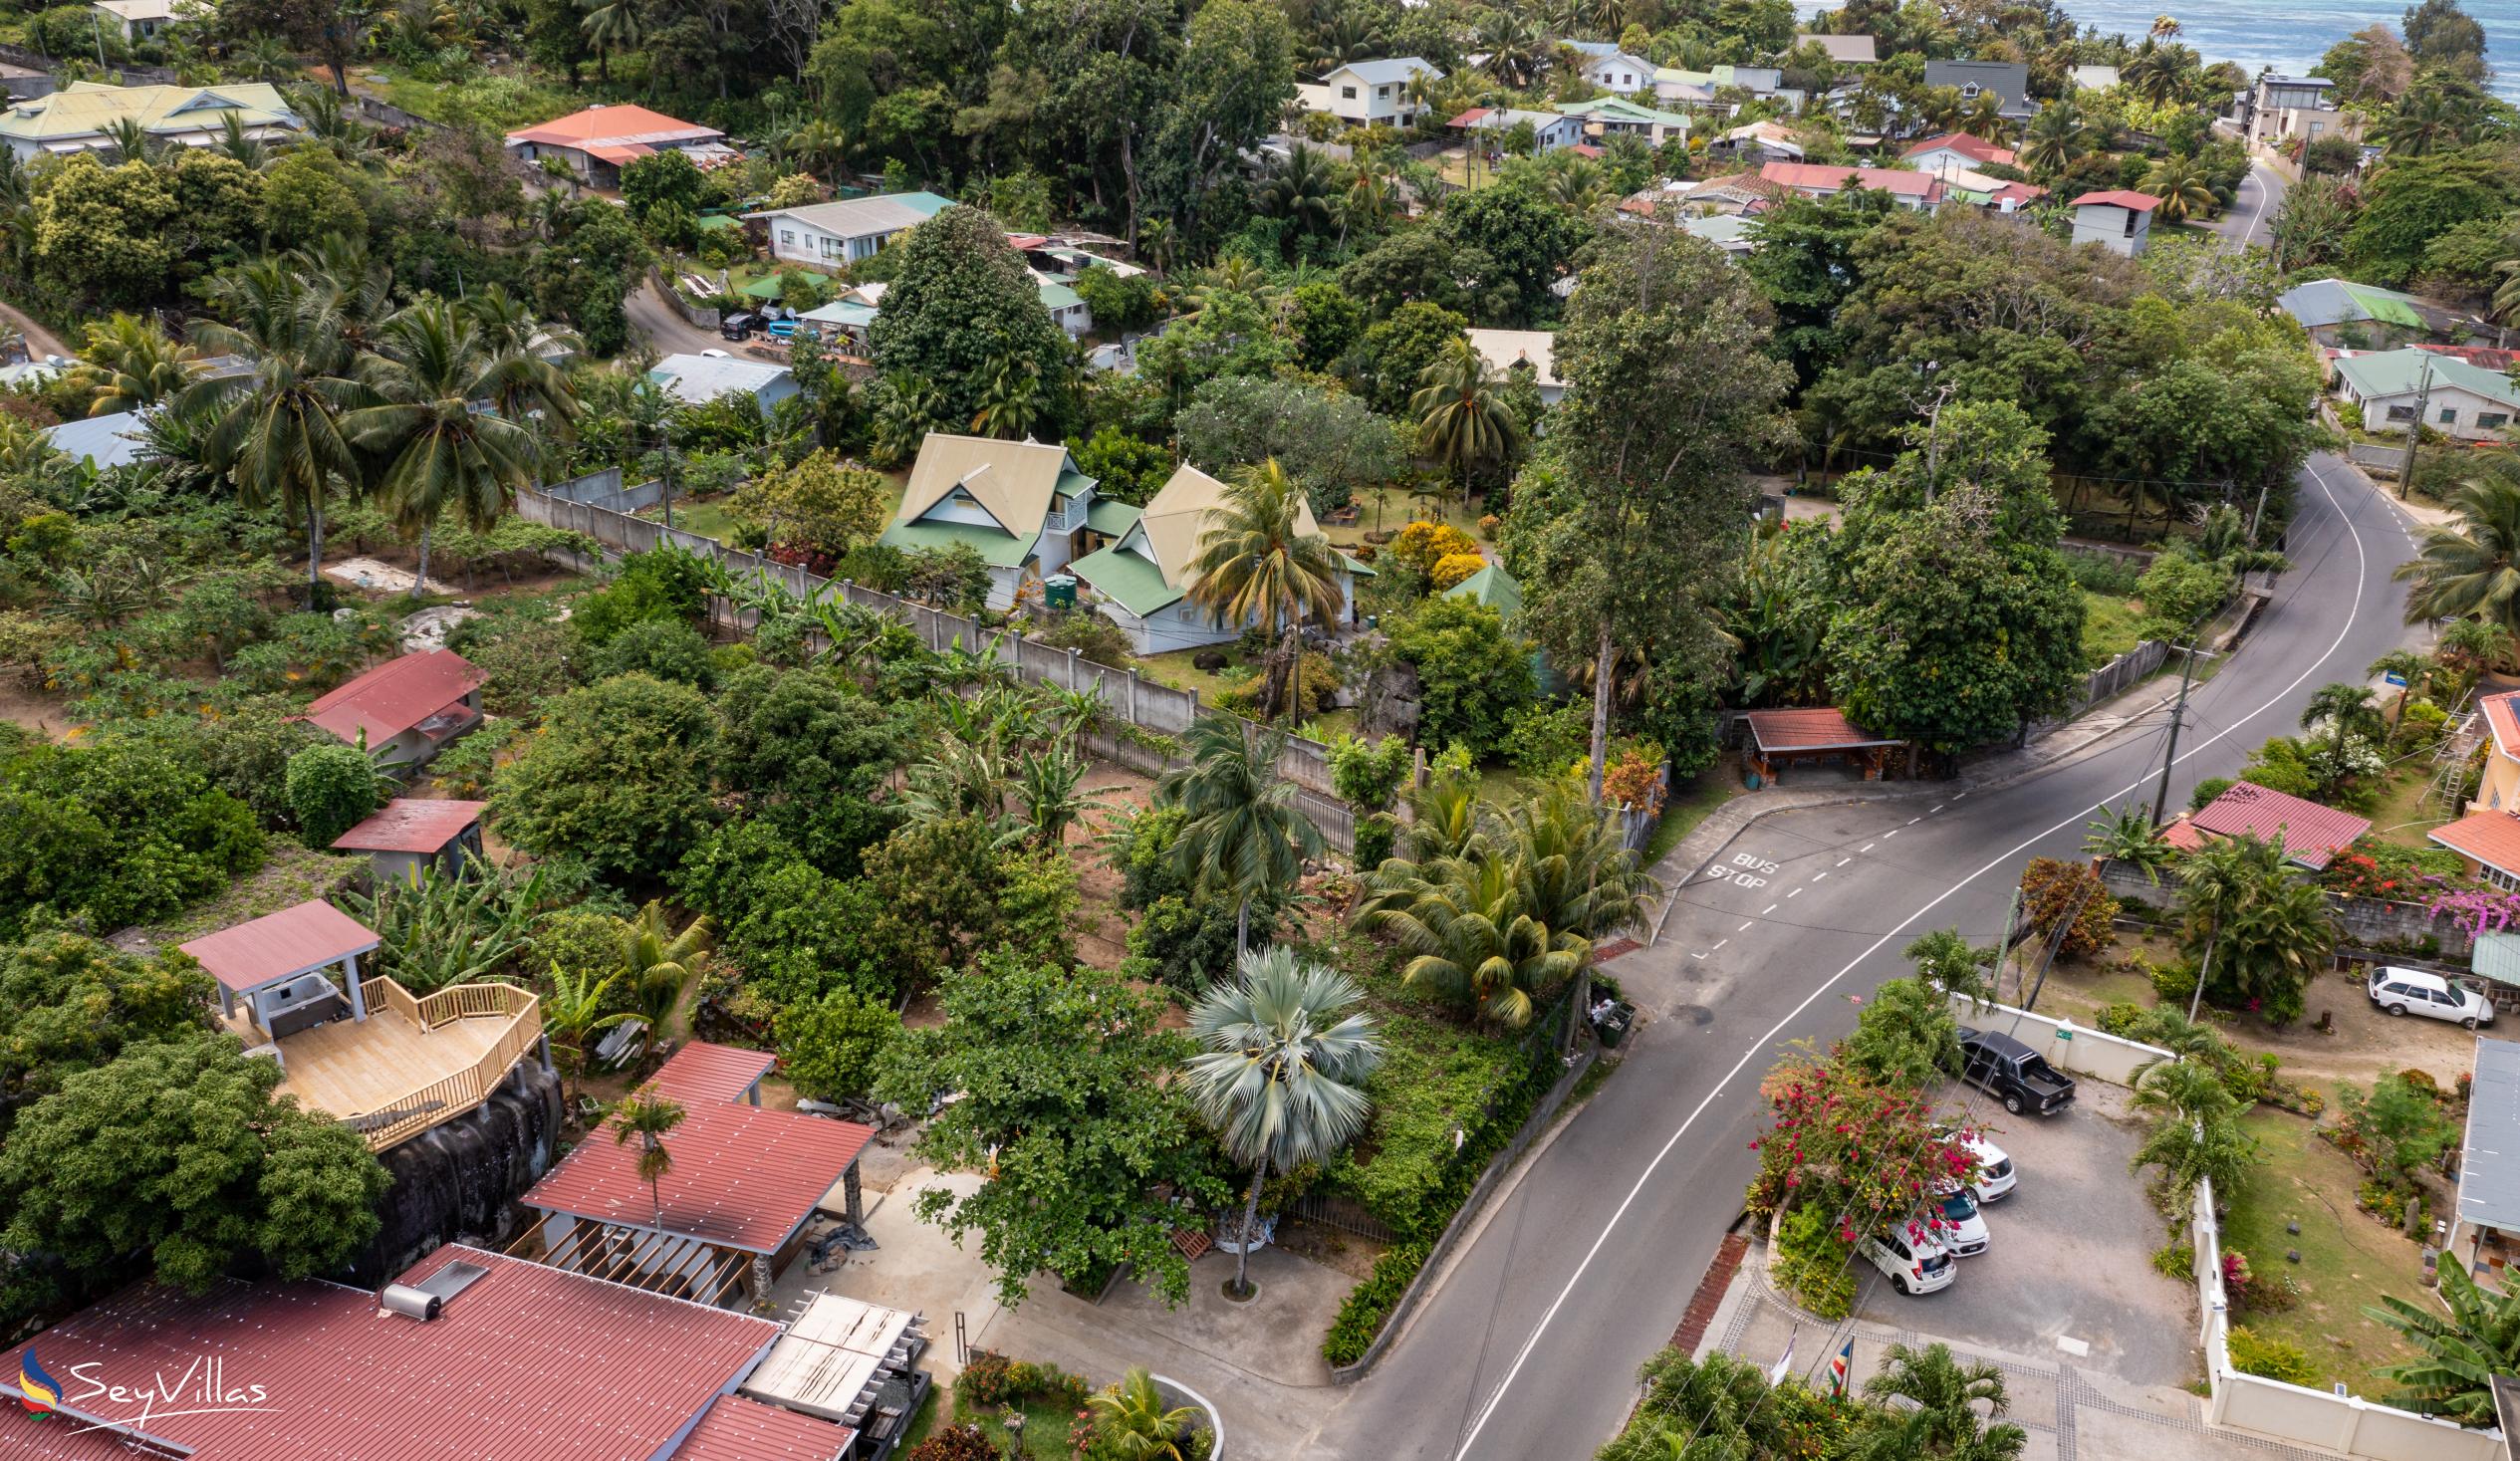 Foto 36: Villa Kordia - Posizione - Mahé (Seychelles)